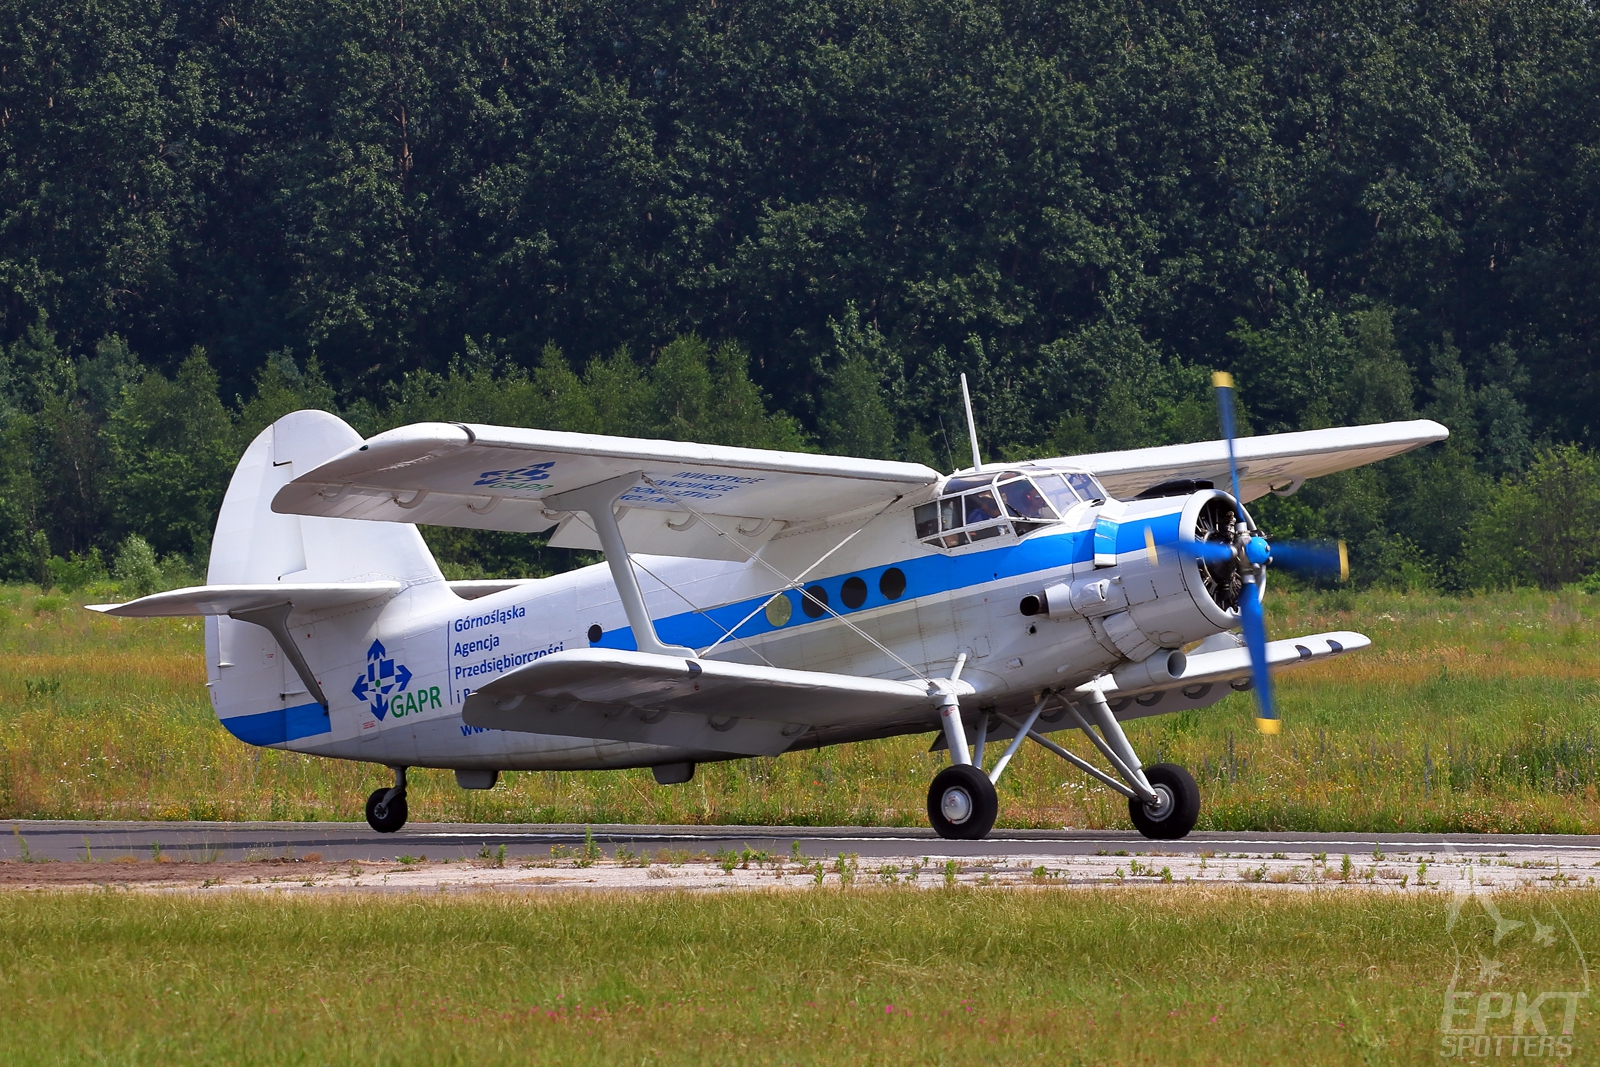 SP-AOB - PZL-Mielec An-2  (Aeroklub Gliwicki) / Muchowiec - Katowice Poland [EPKM/]